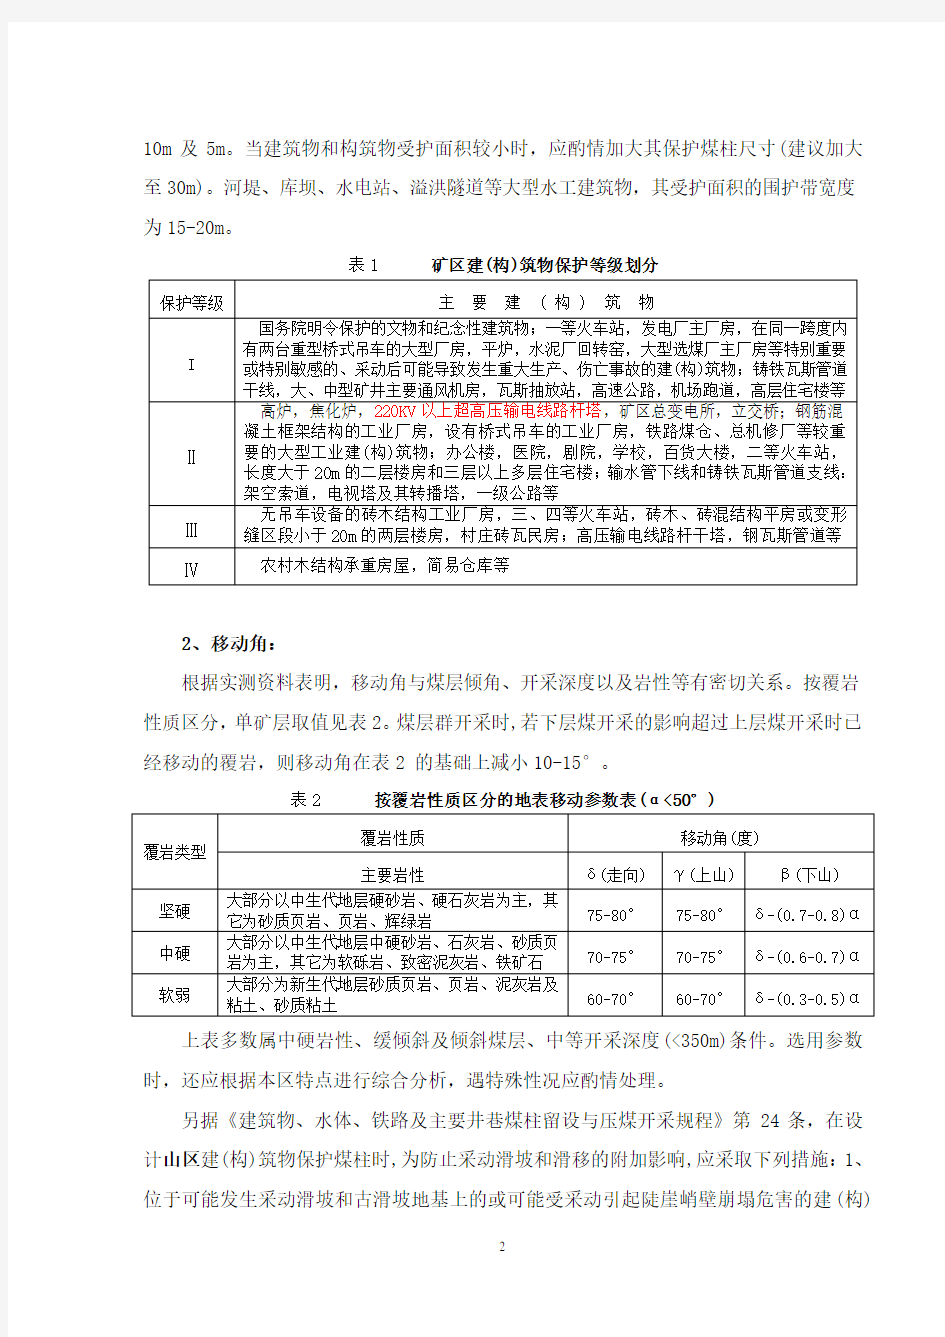 对压覆矿产资源评估报告编制的建议(贵州省)